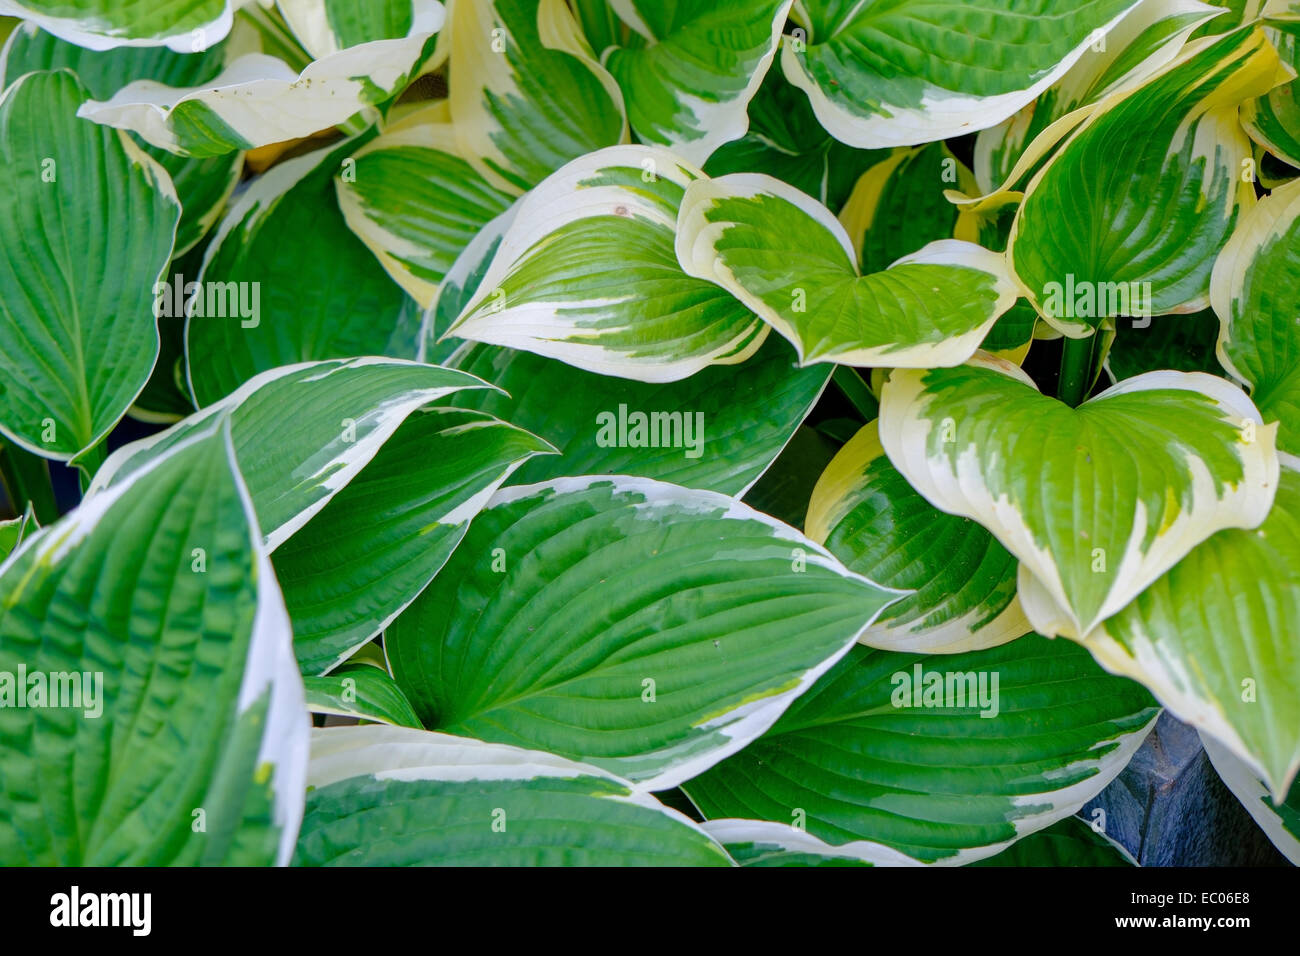 Bunte Hosta Pflanzen mit Grün und weiß umrandeten Blättern. Stockfoto